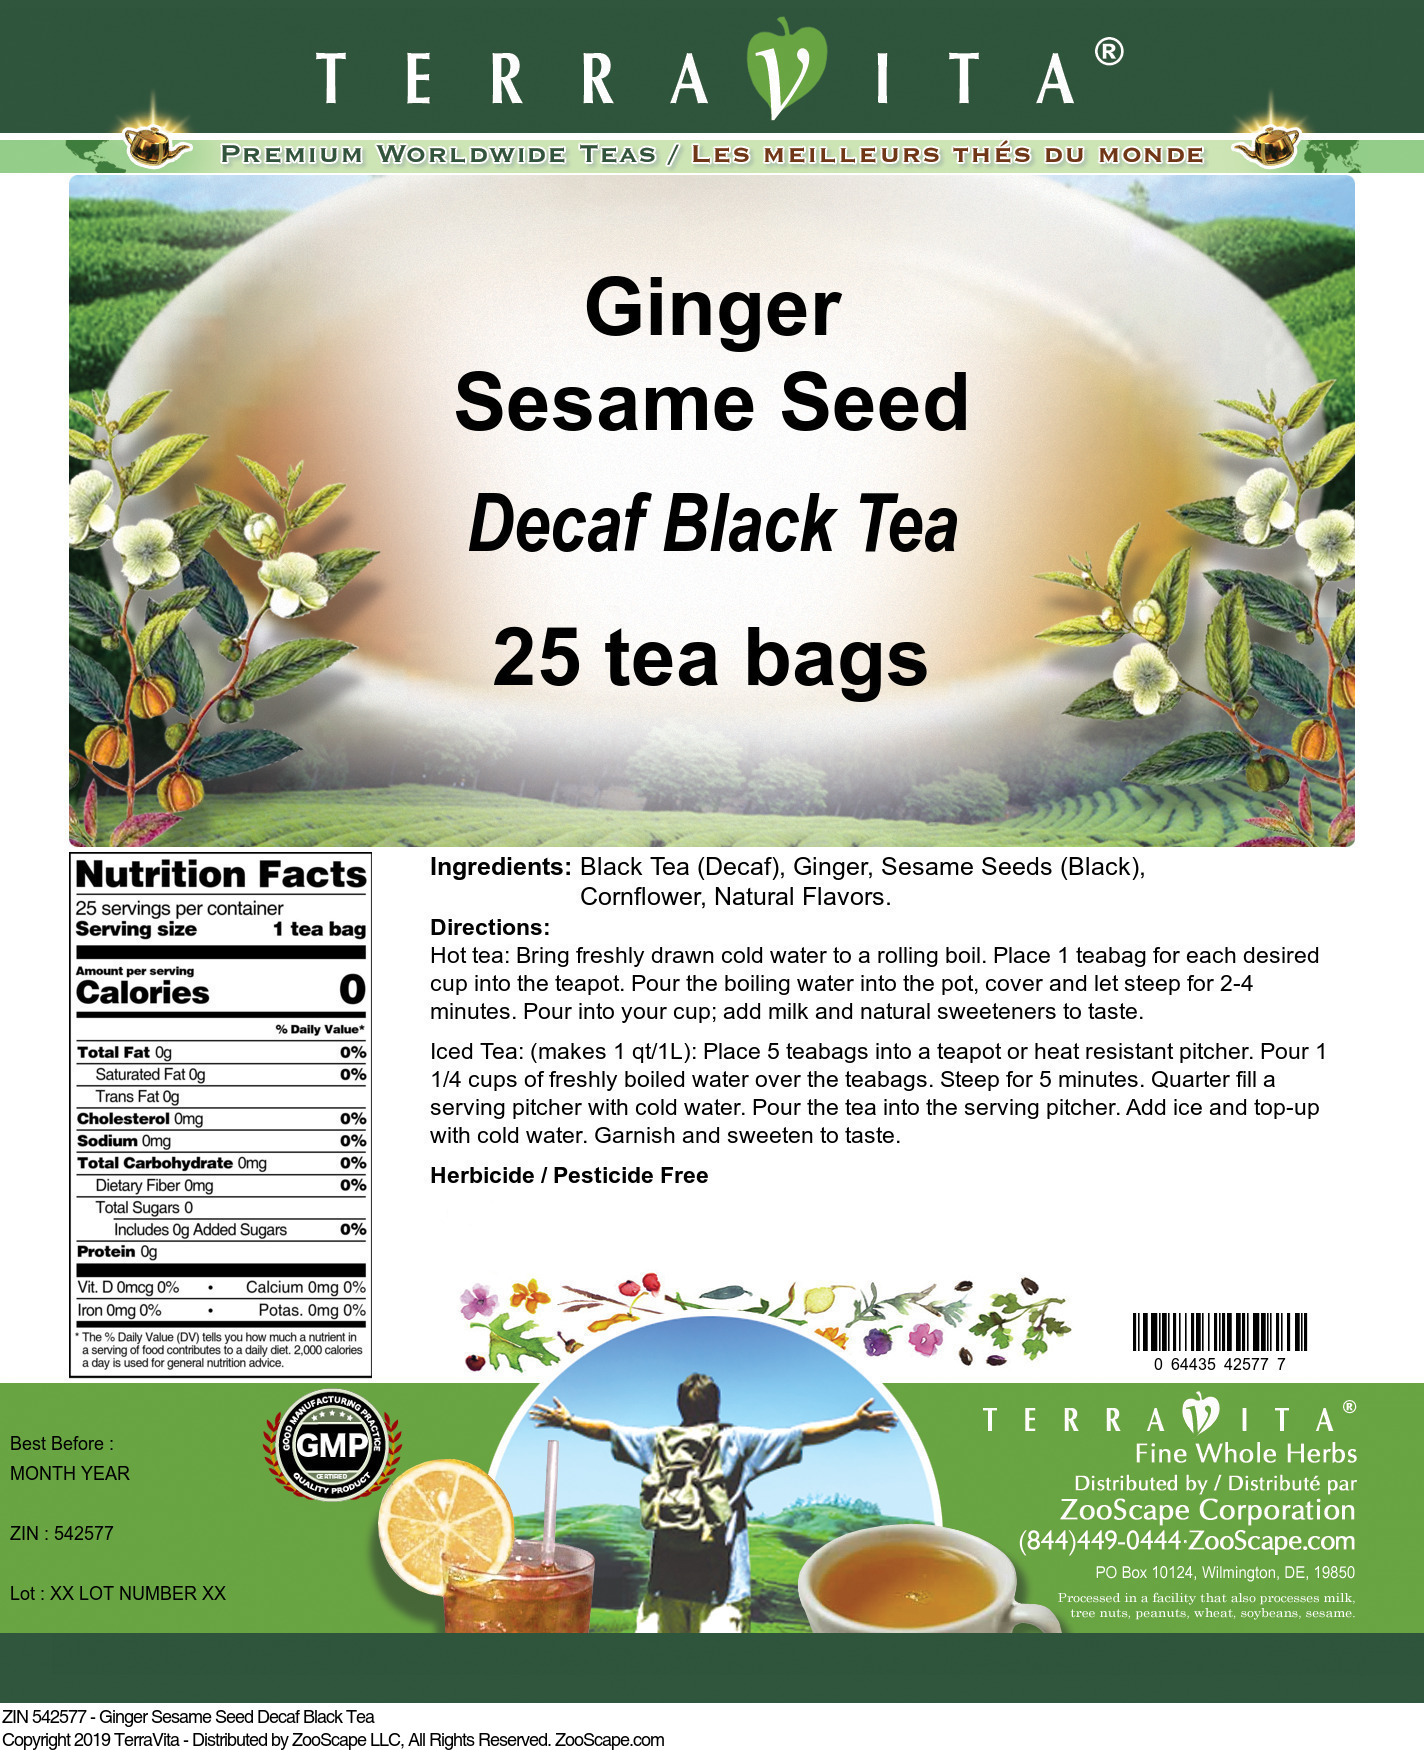 Ginger Sesame Seed Decaf Black Tea - Label